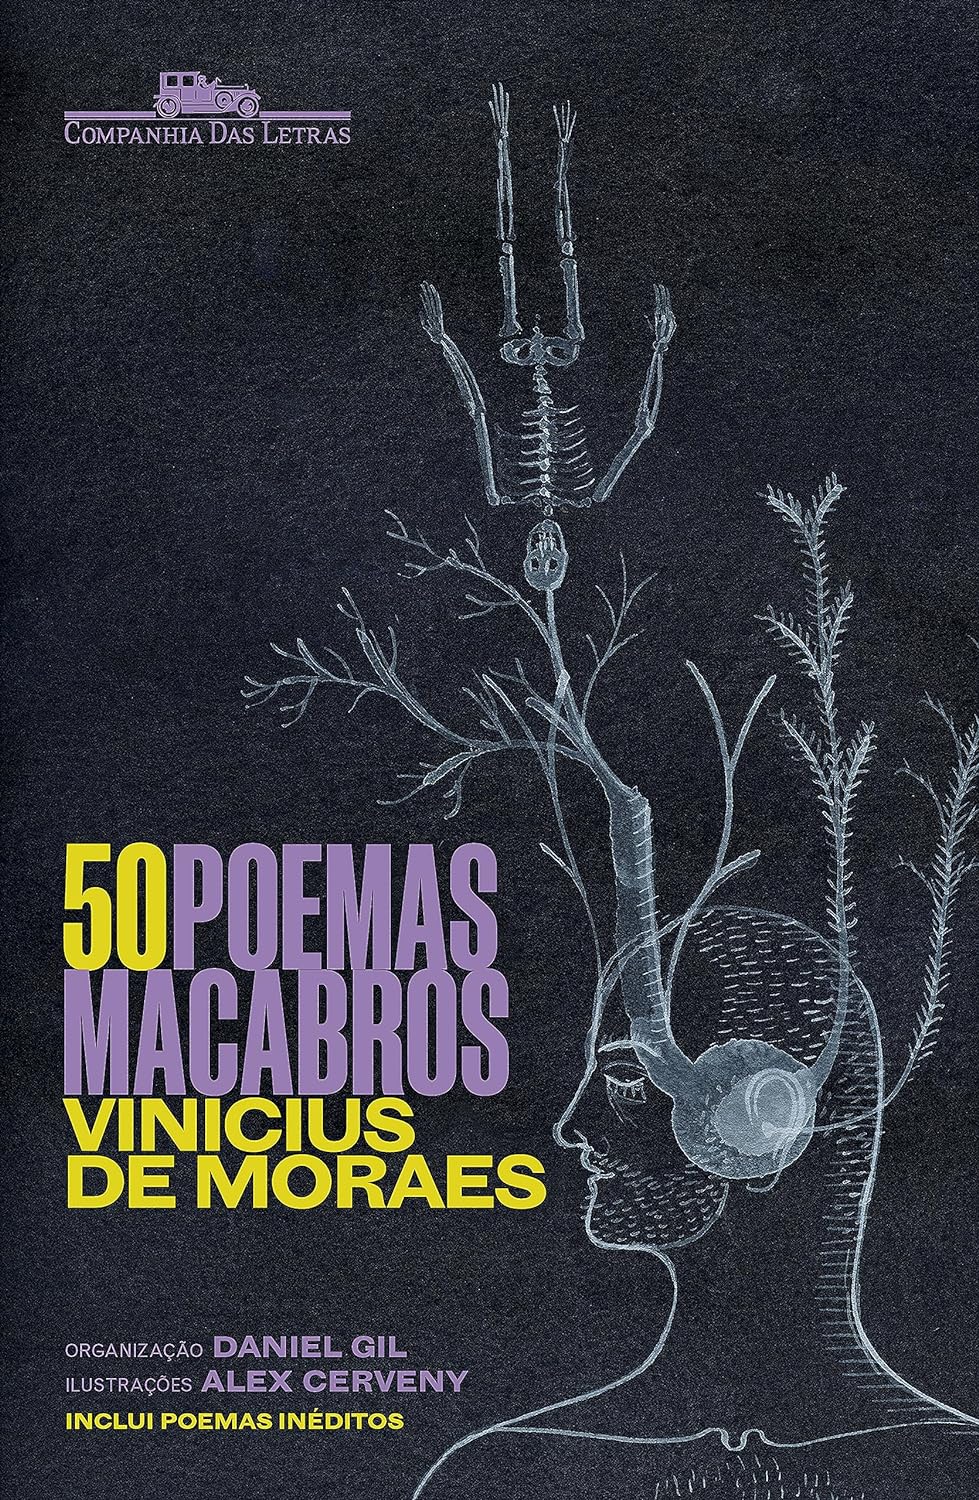 "50 poemas macabros", de Vinícius de Moraes